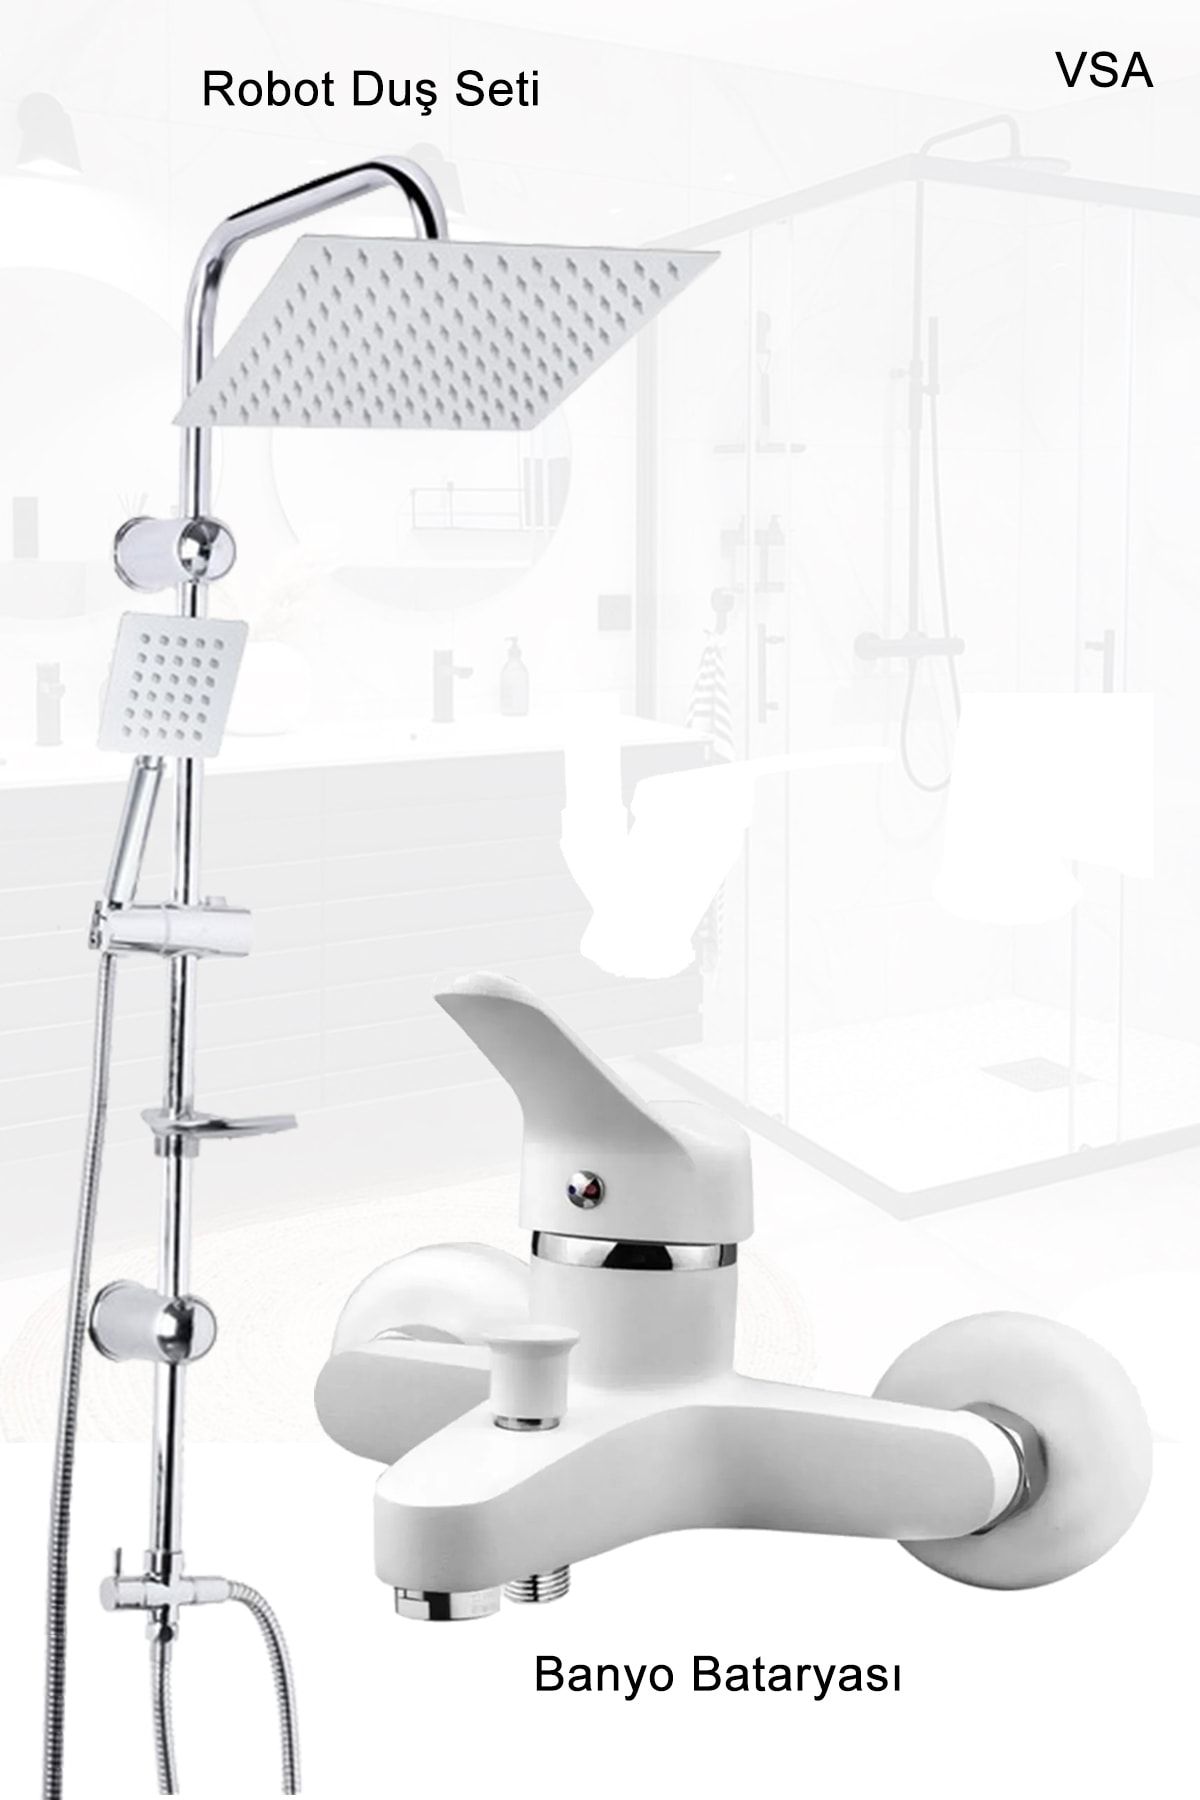 VSA Beyaz Robot Yağmurlama Duş Seti Banyo Bataryası Aç Kapa Garantili Musluk Set